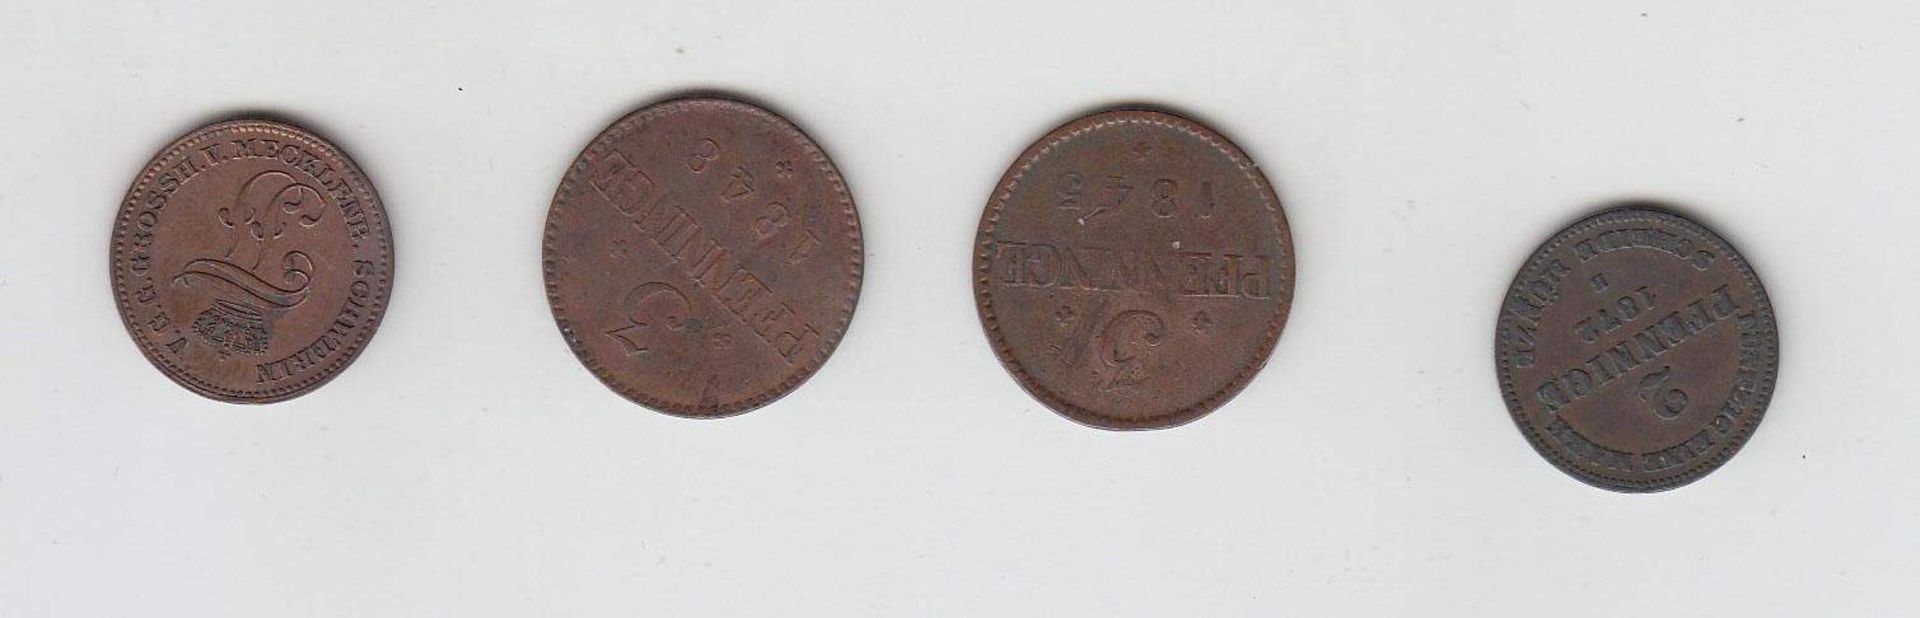 4 MünzenMecklenburg Schwerin 1845 - 1872, KupferAufrufpreis: 10 EUR - Image 2 of 2